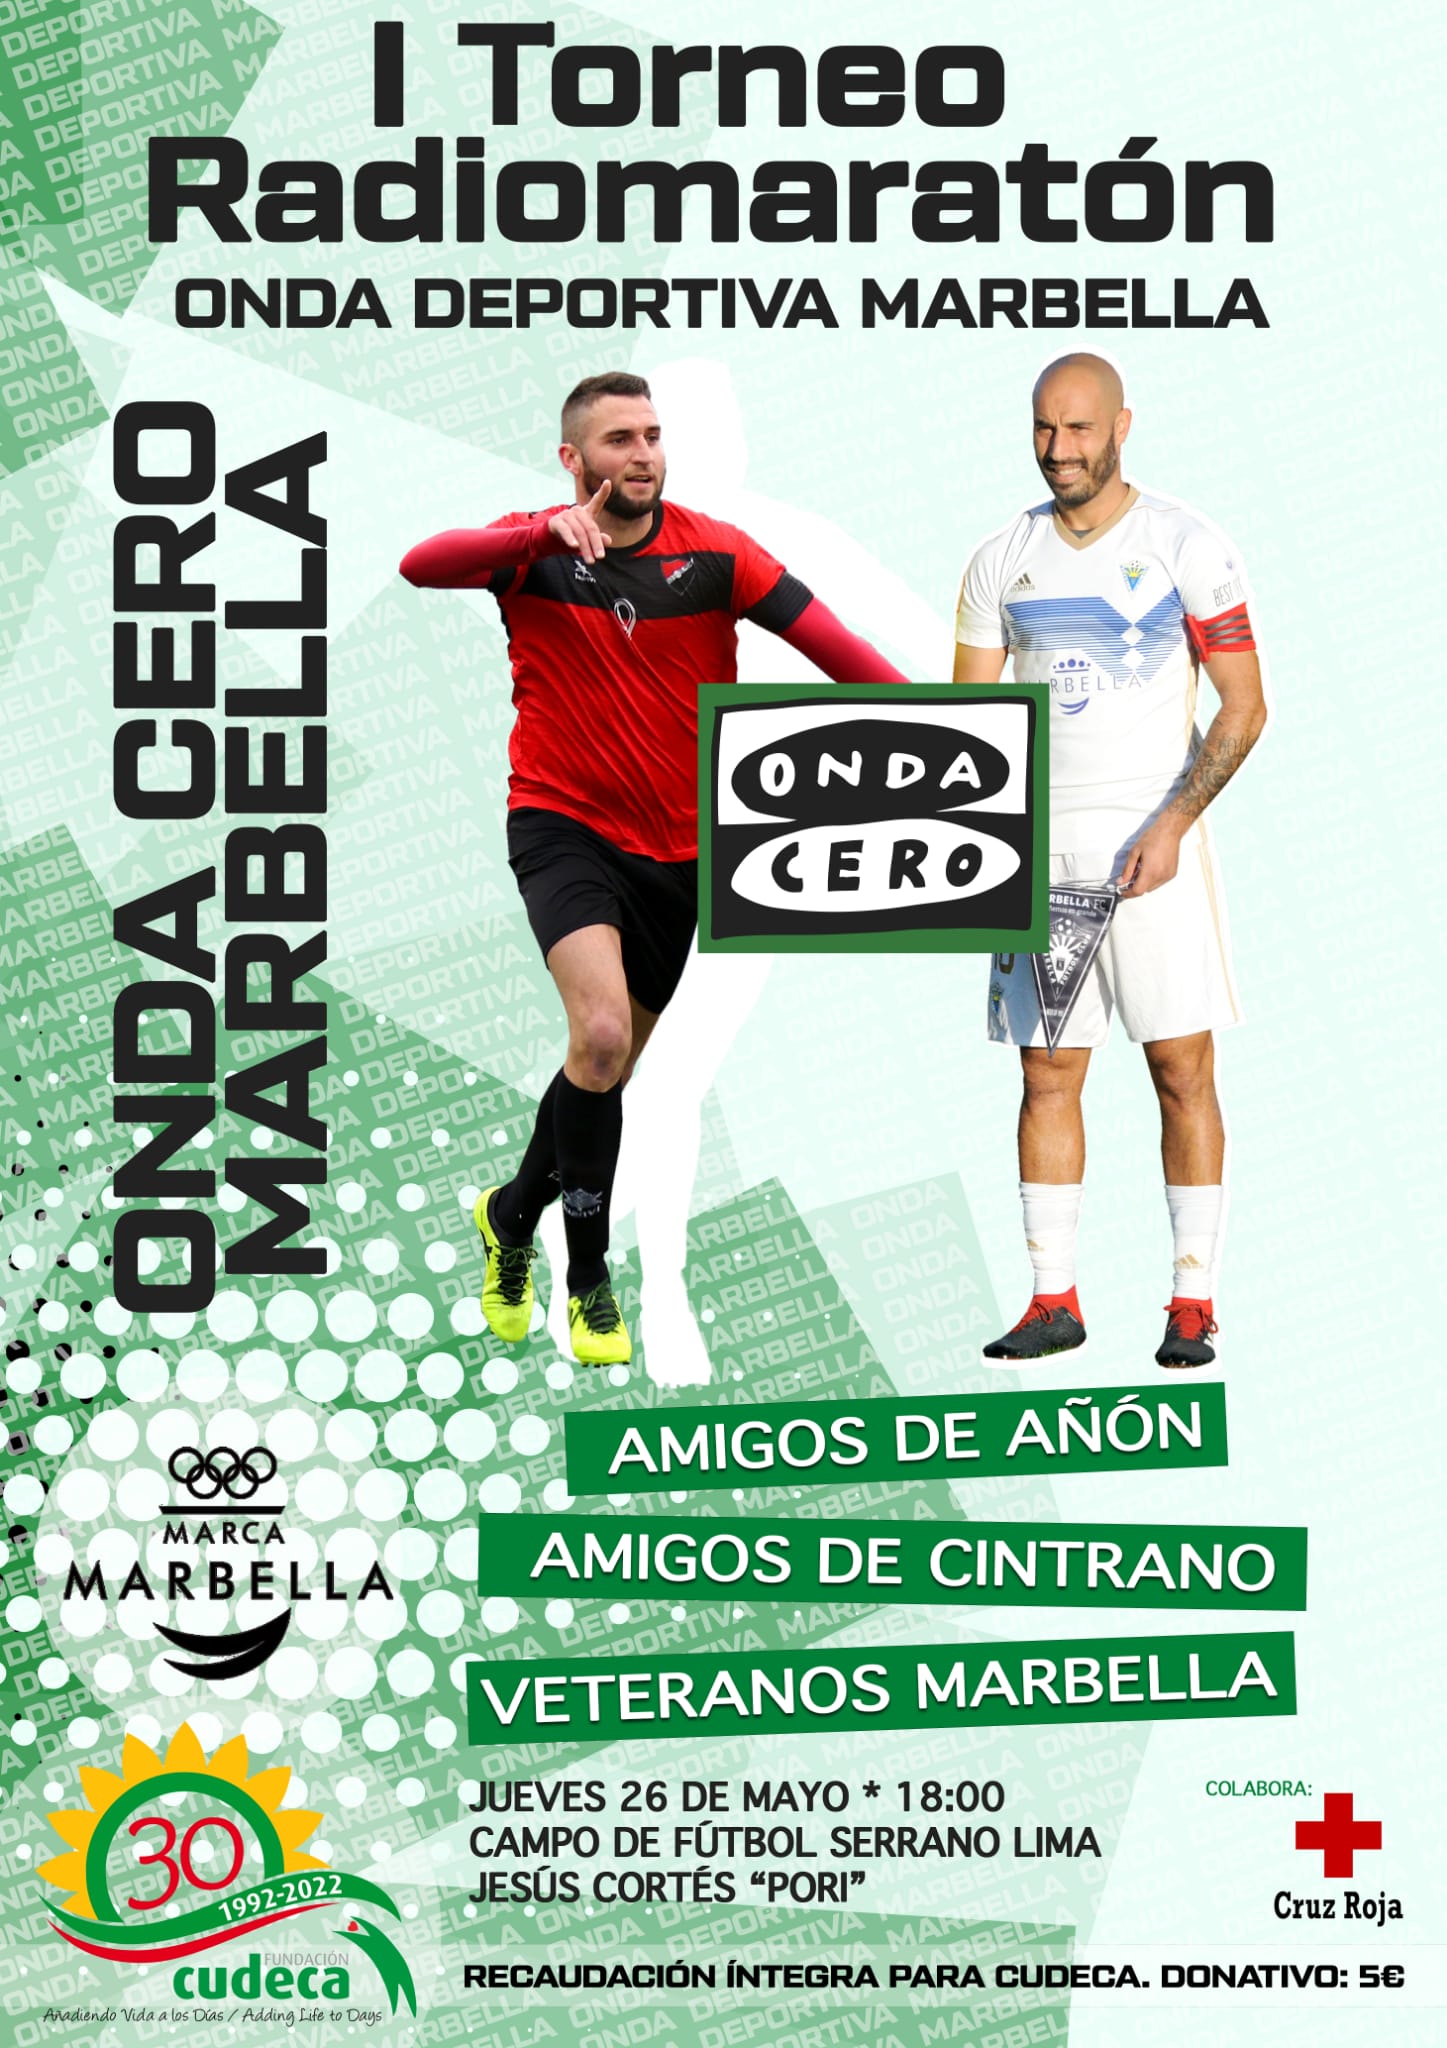 Onda Cero Marbella Radiomarathon in aid of Cudeca